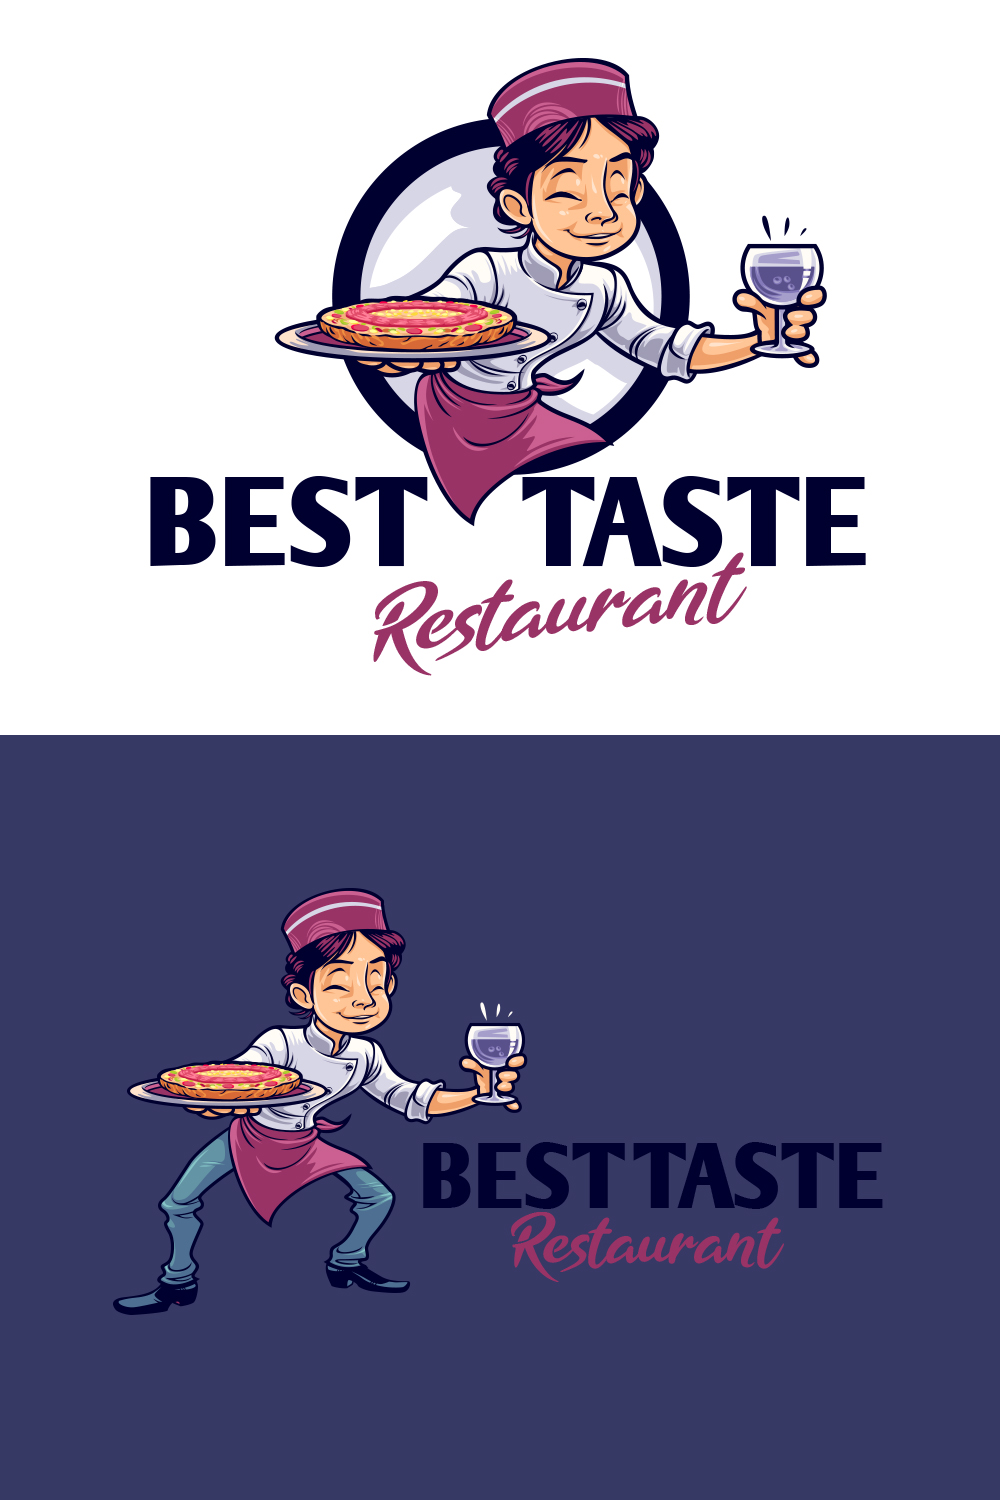 Best Taste Restaurant Logo pinterest preview image.